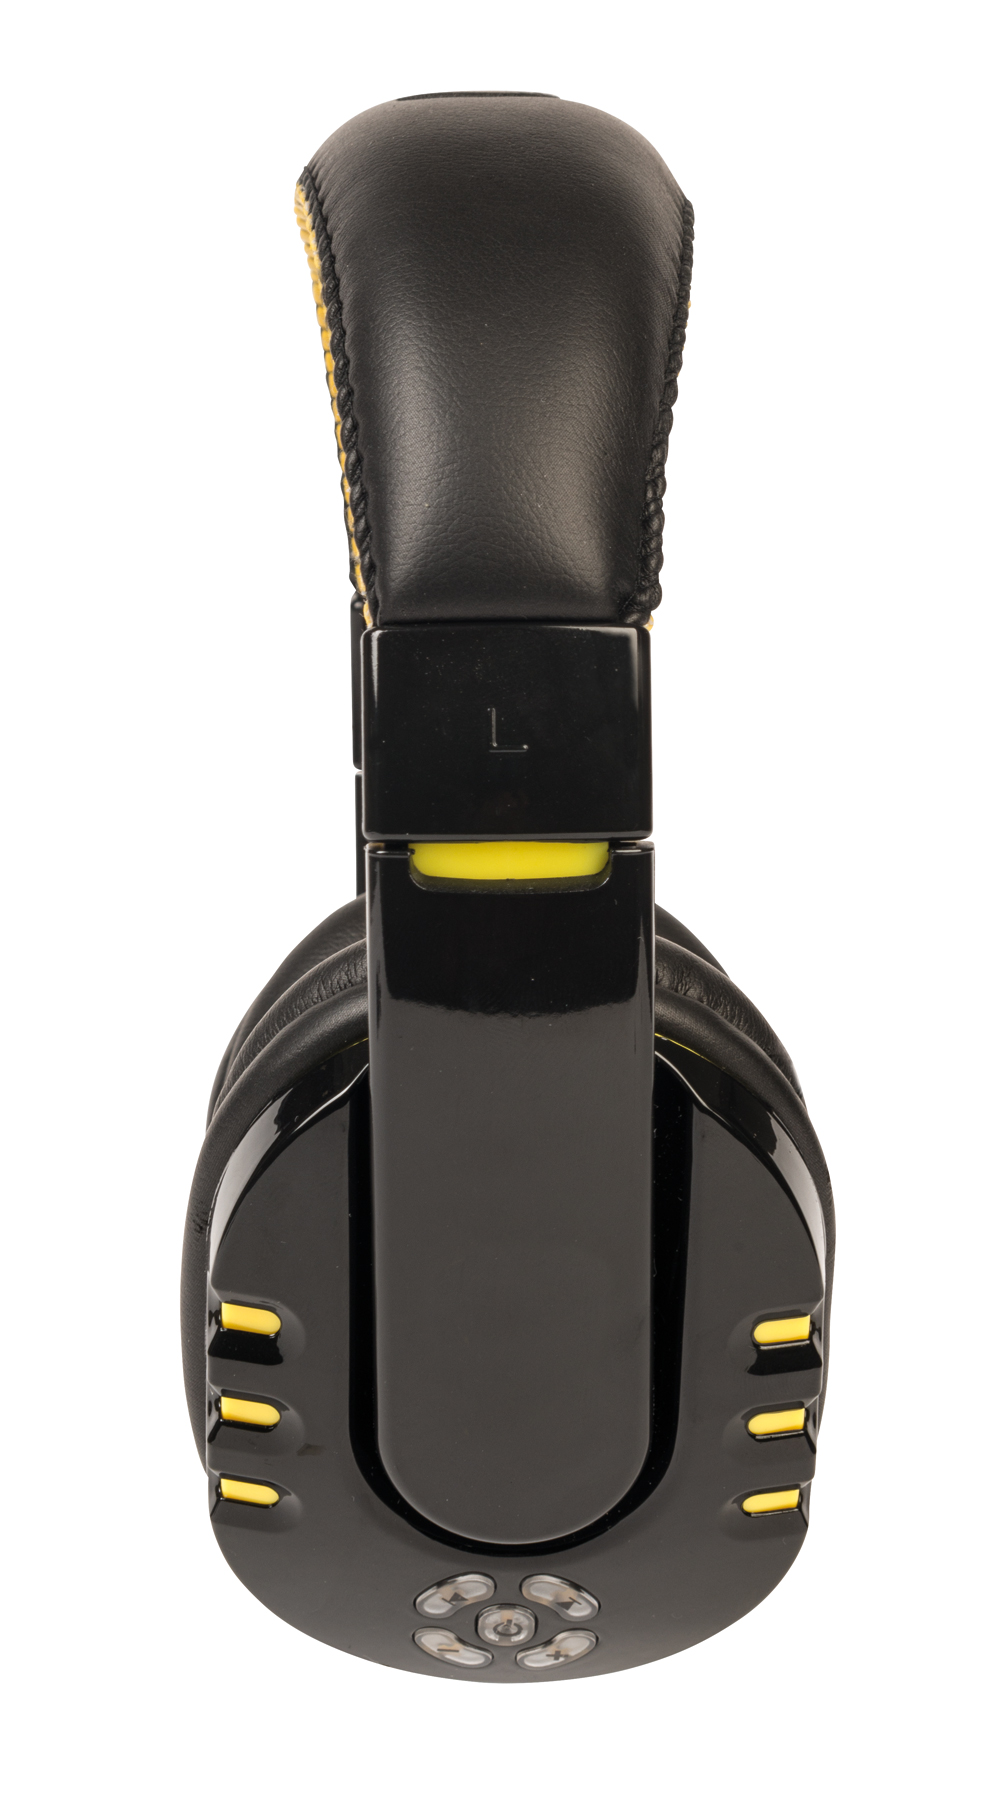 Słuchawki bezprzewodowe RACER, czarny, żółty